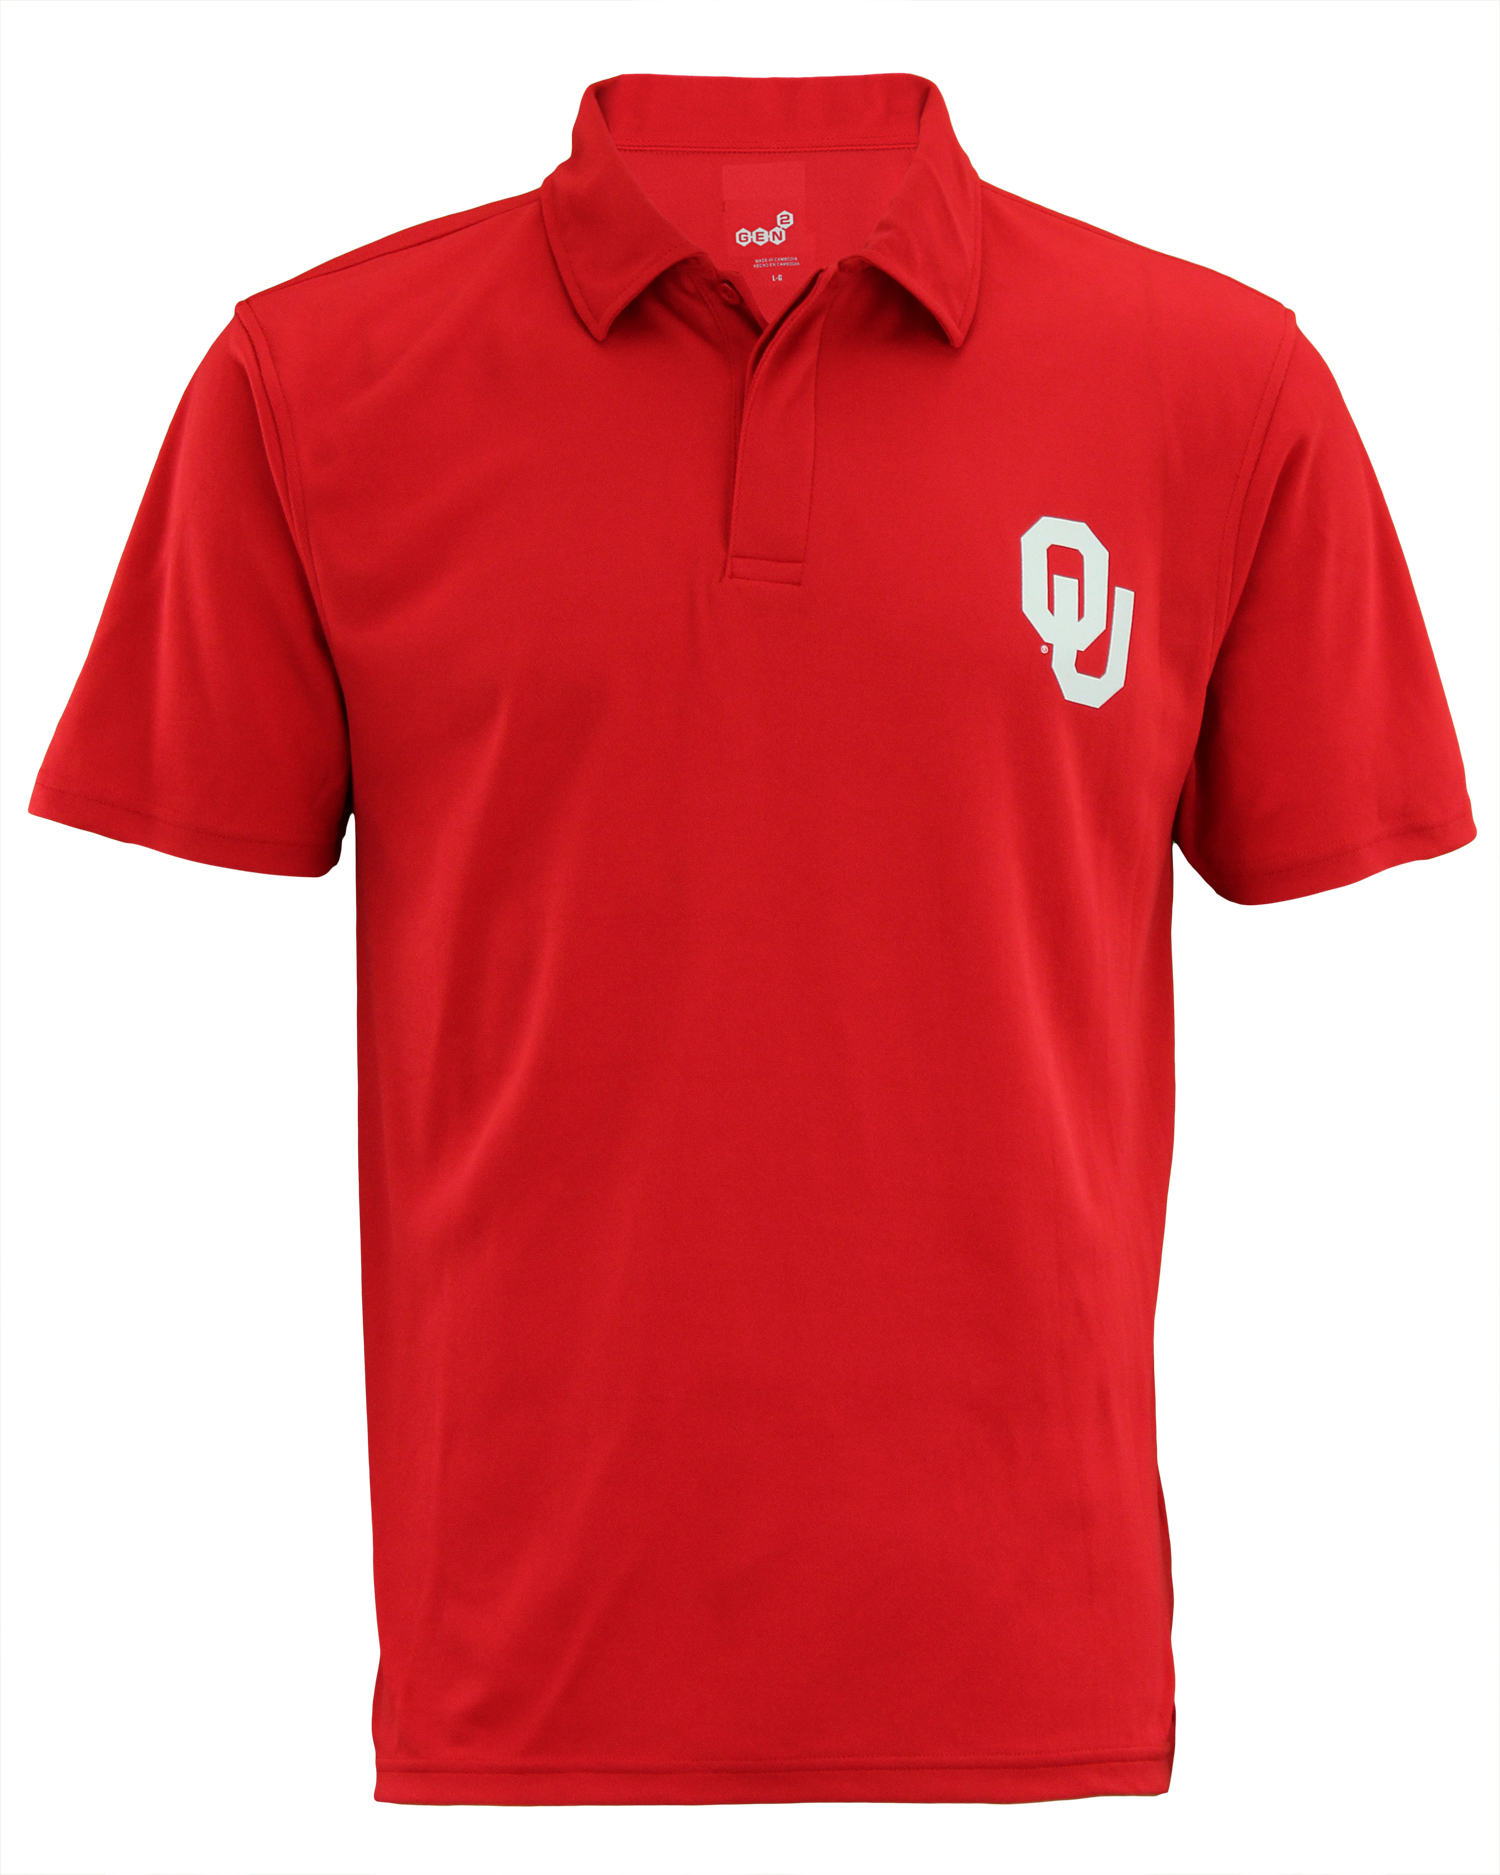 NCAA Men's Oklahoma Sooners Short Sleeve Performance Polo Shirt | eBay